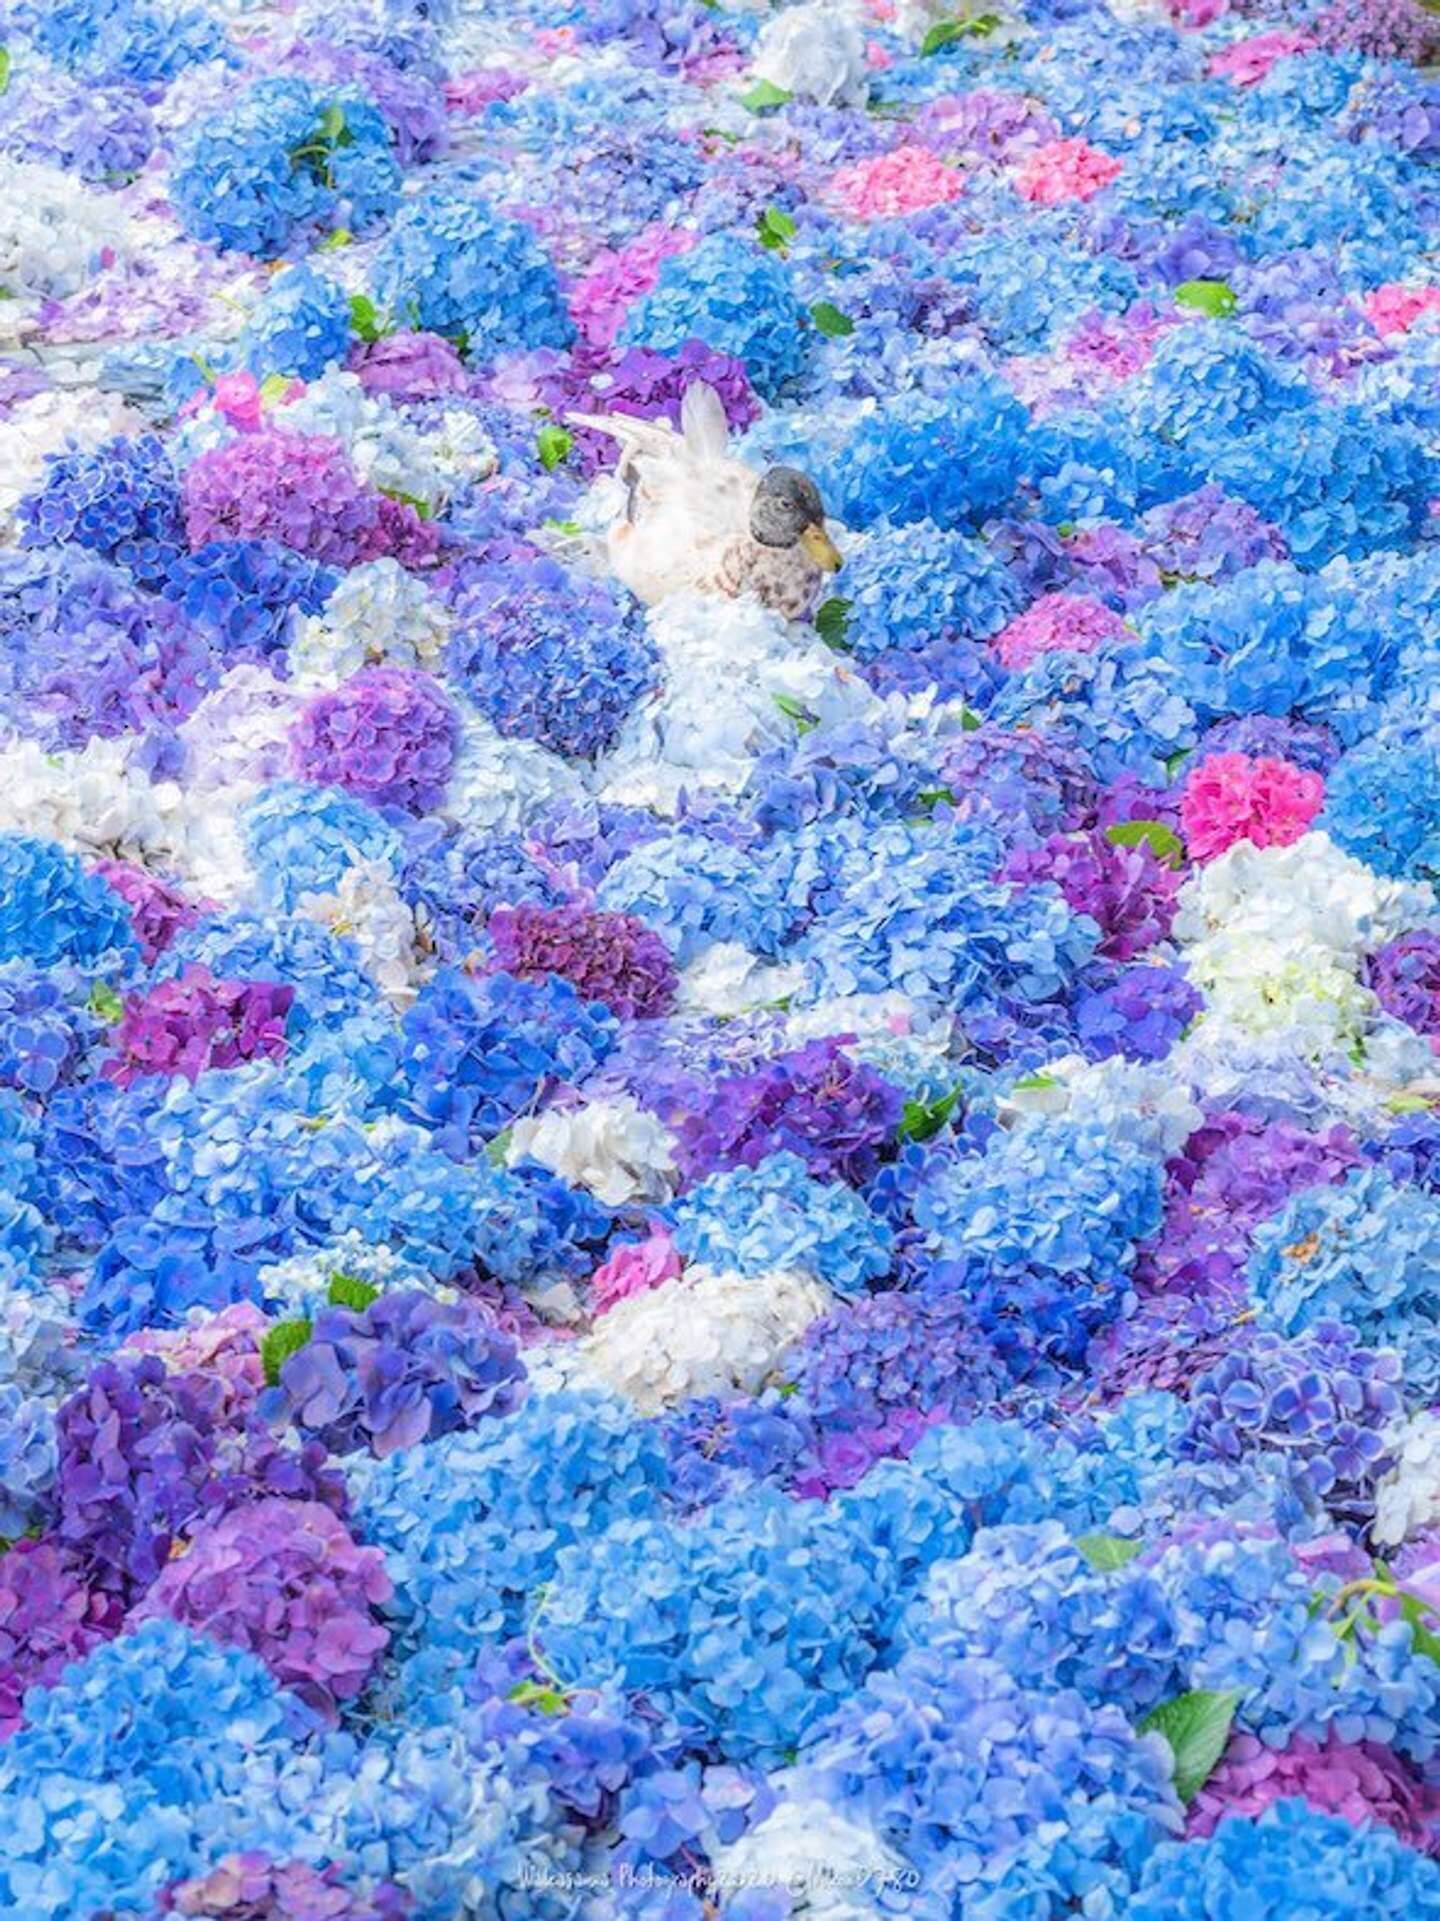 美しすぎる アジサイの海 でひとやすみ お花の上に乗っかった鴨にほっこり 21年5月28日 エキサイトニュース